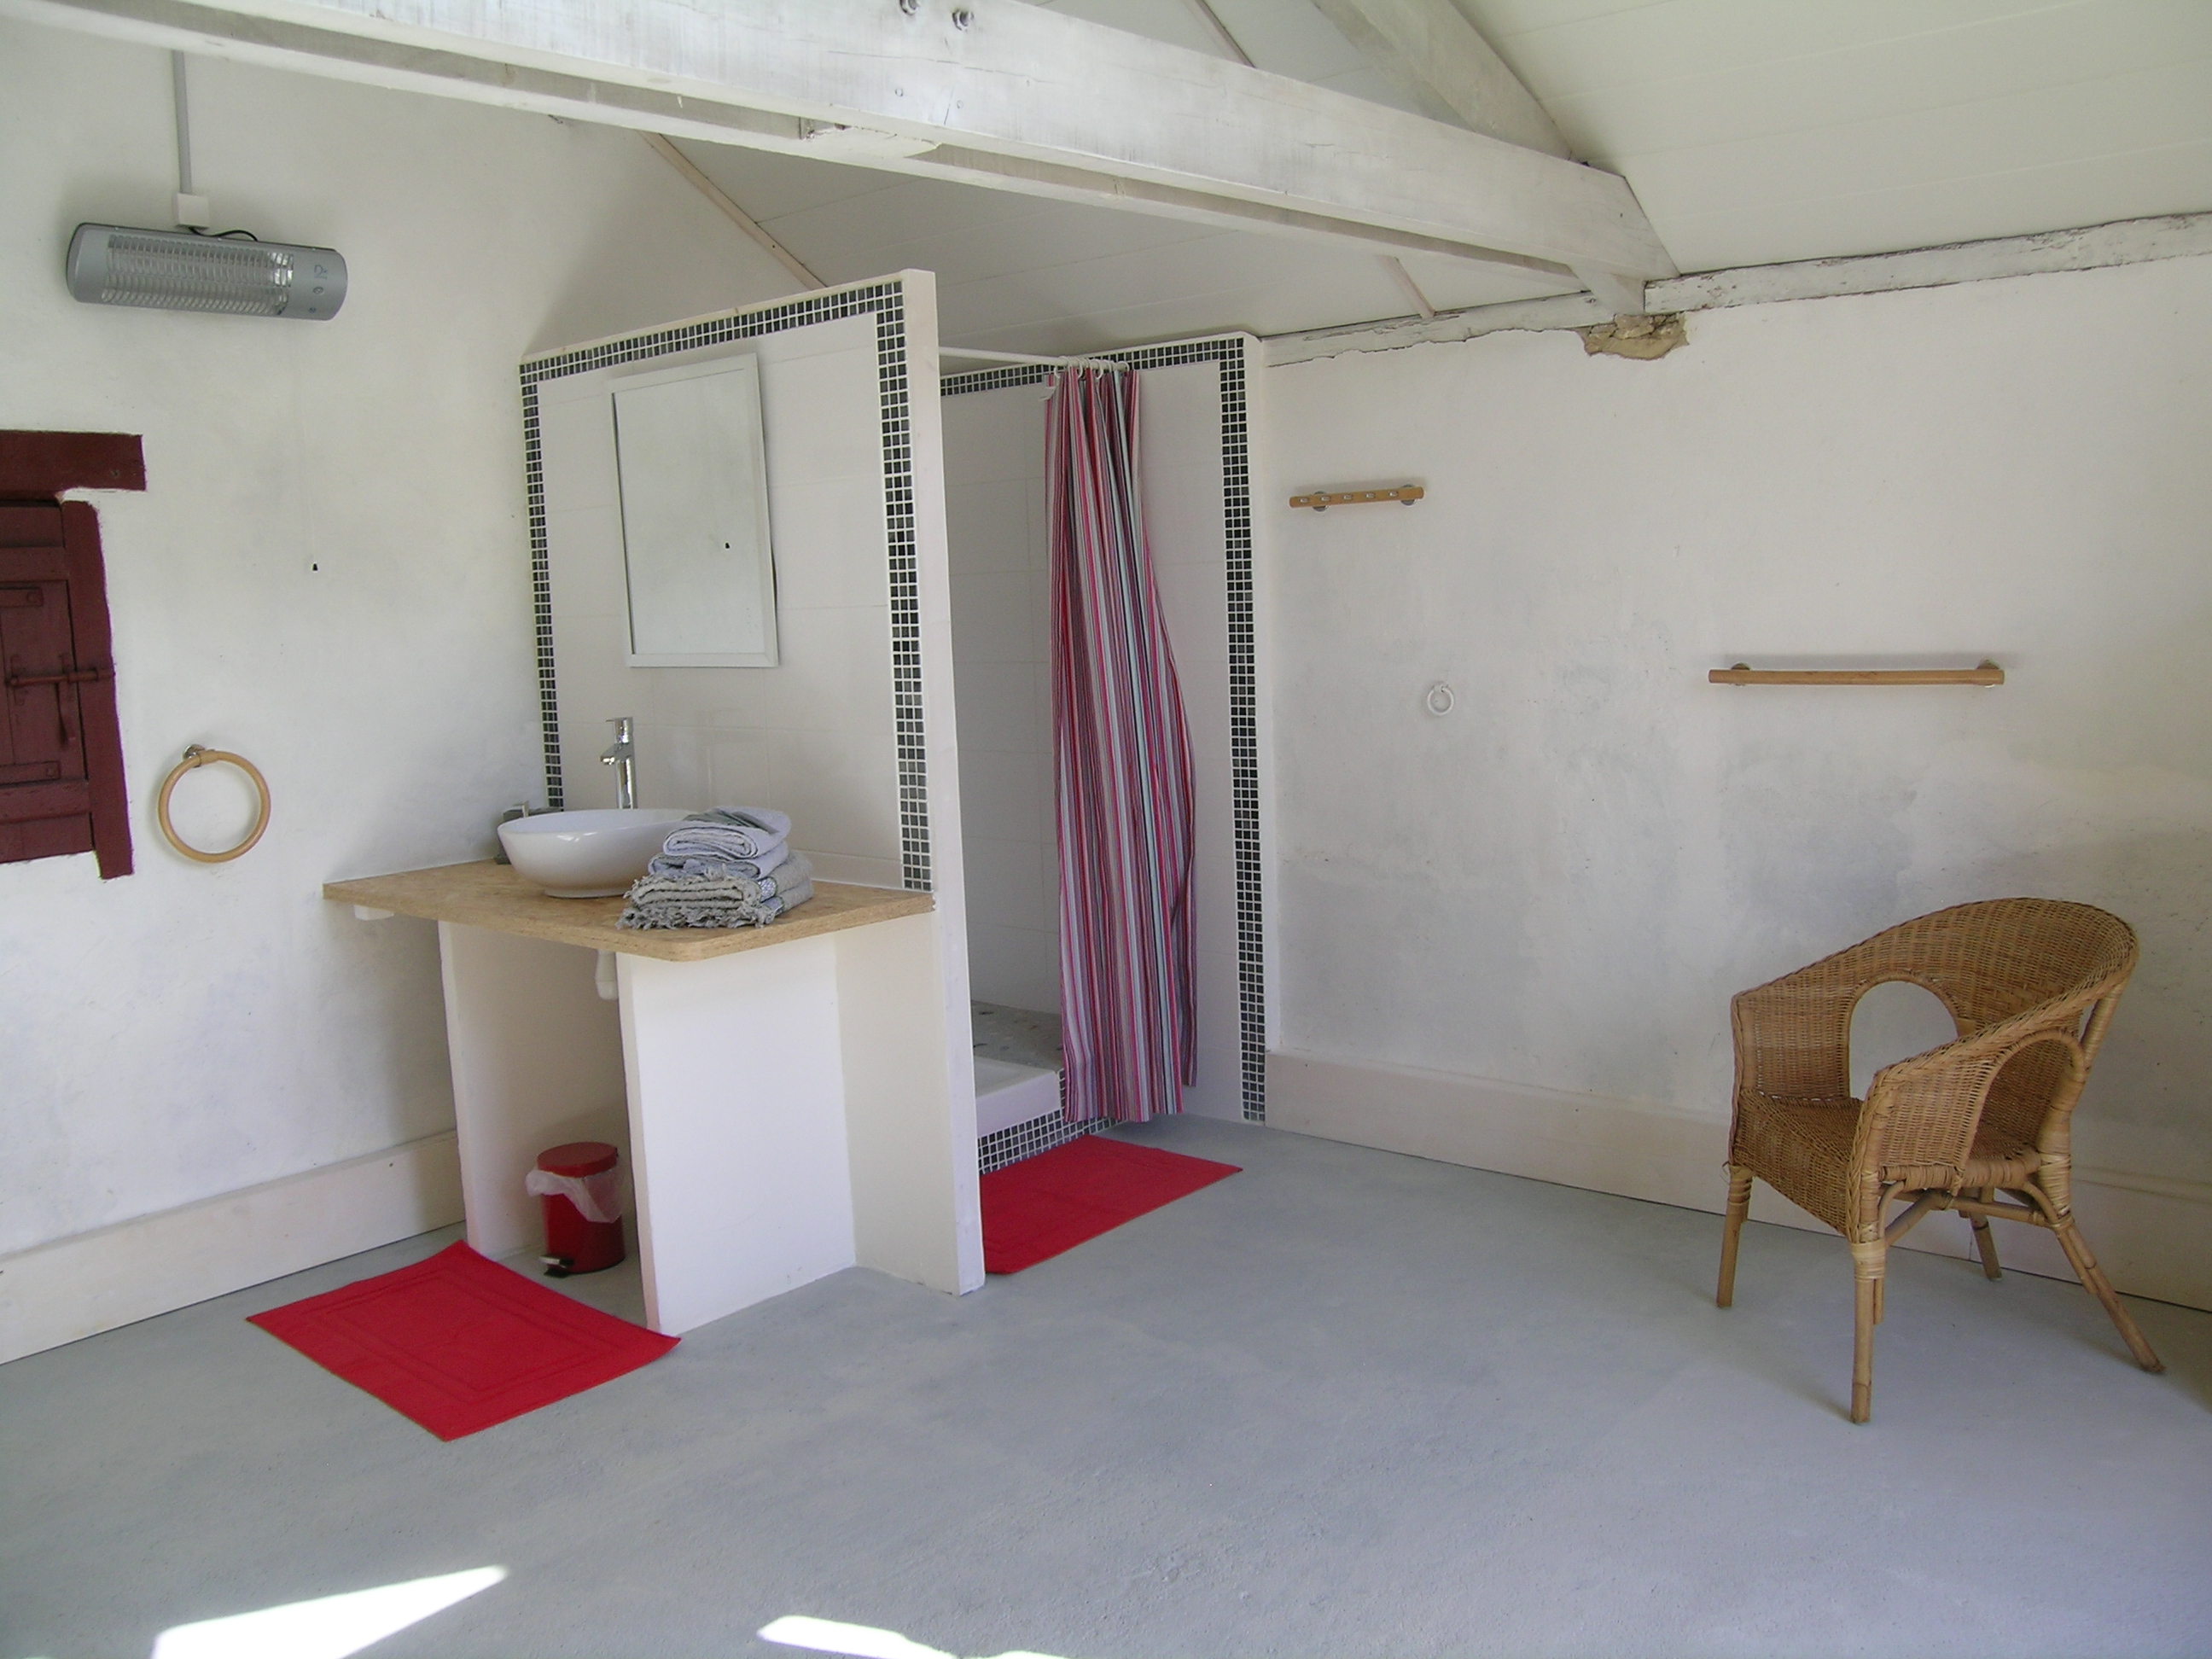 Salle d'eau privative avec douche et plan vasque de la cabane perchée - Bergerac - Dordogne